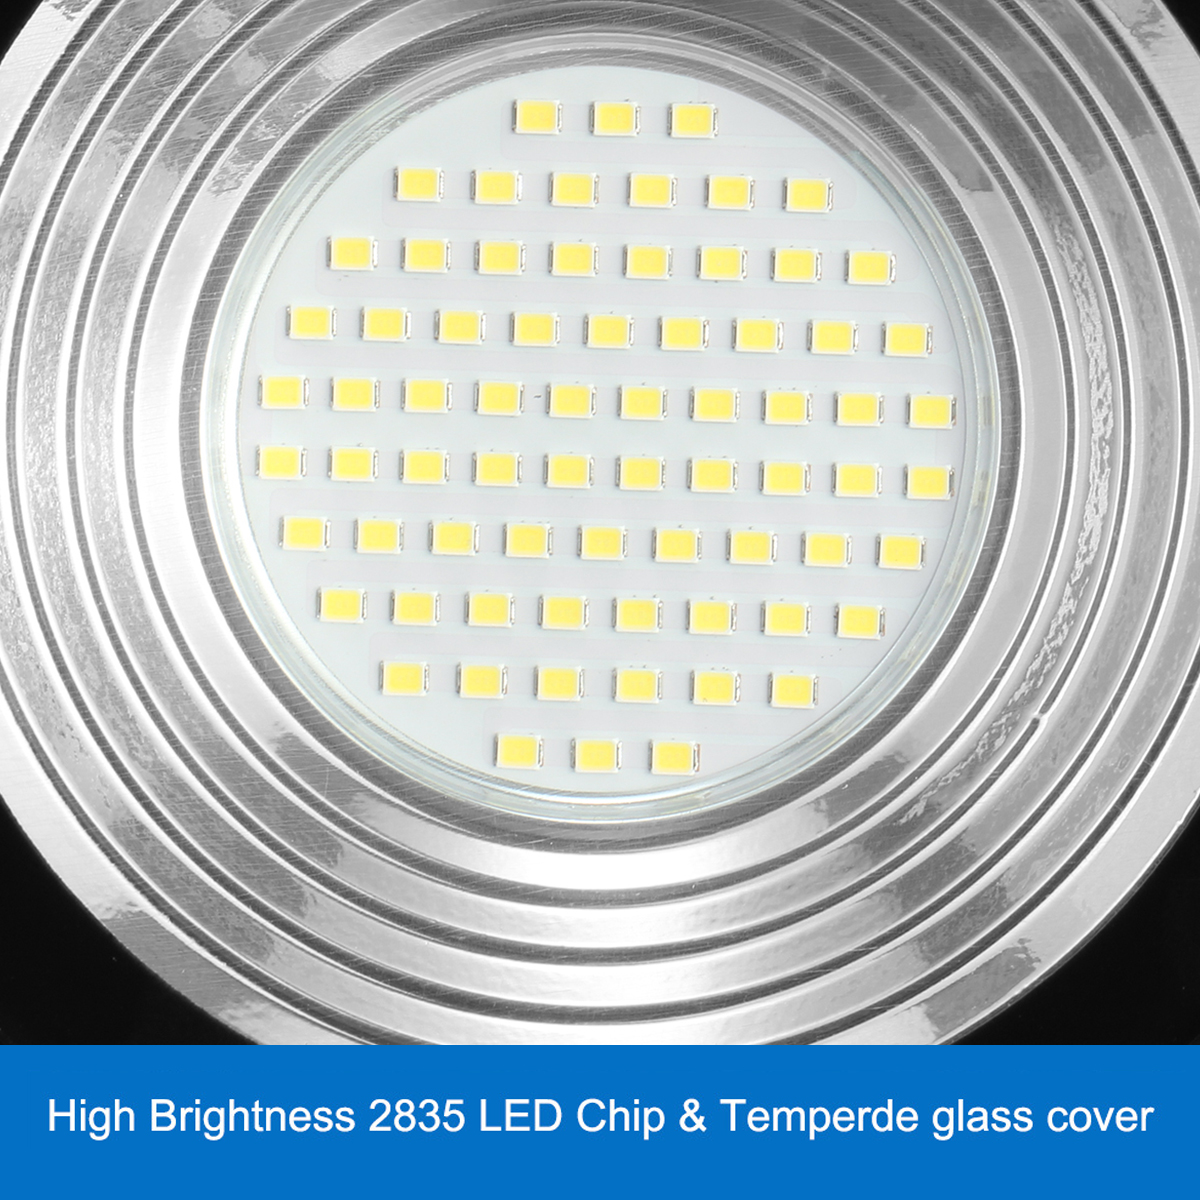 50W-LED-Flood-Light-110V220V--IP65-Waterproof-Outdoor-LED-Lamp-With-Adjustable-Angle-Bracket-Suitabl-1943488-3